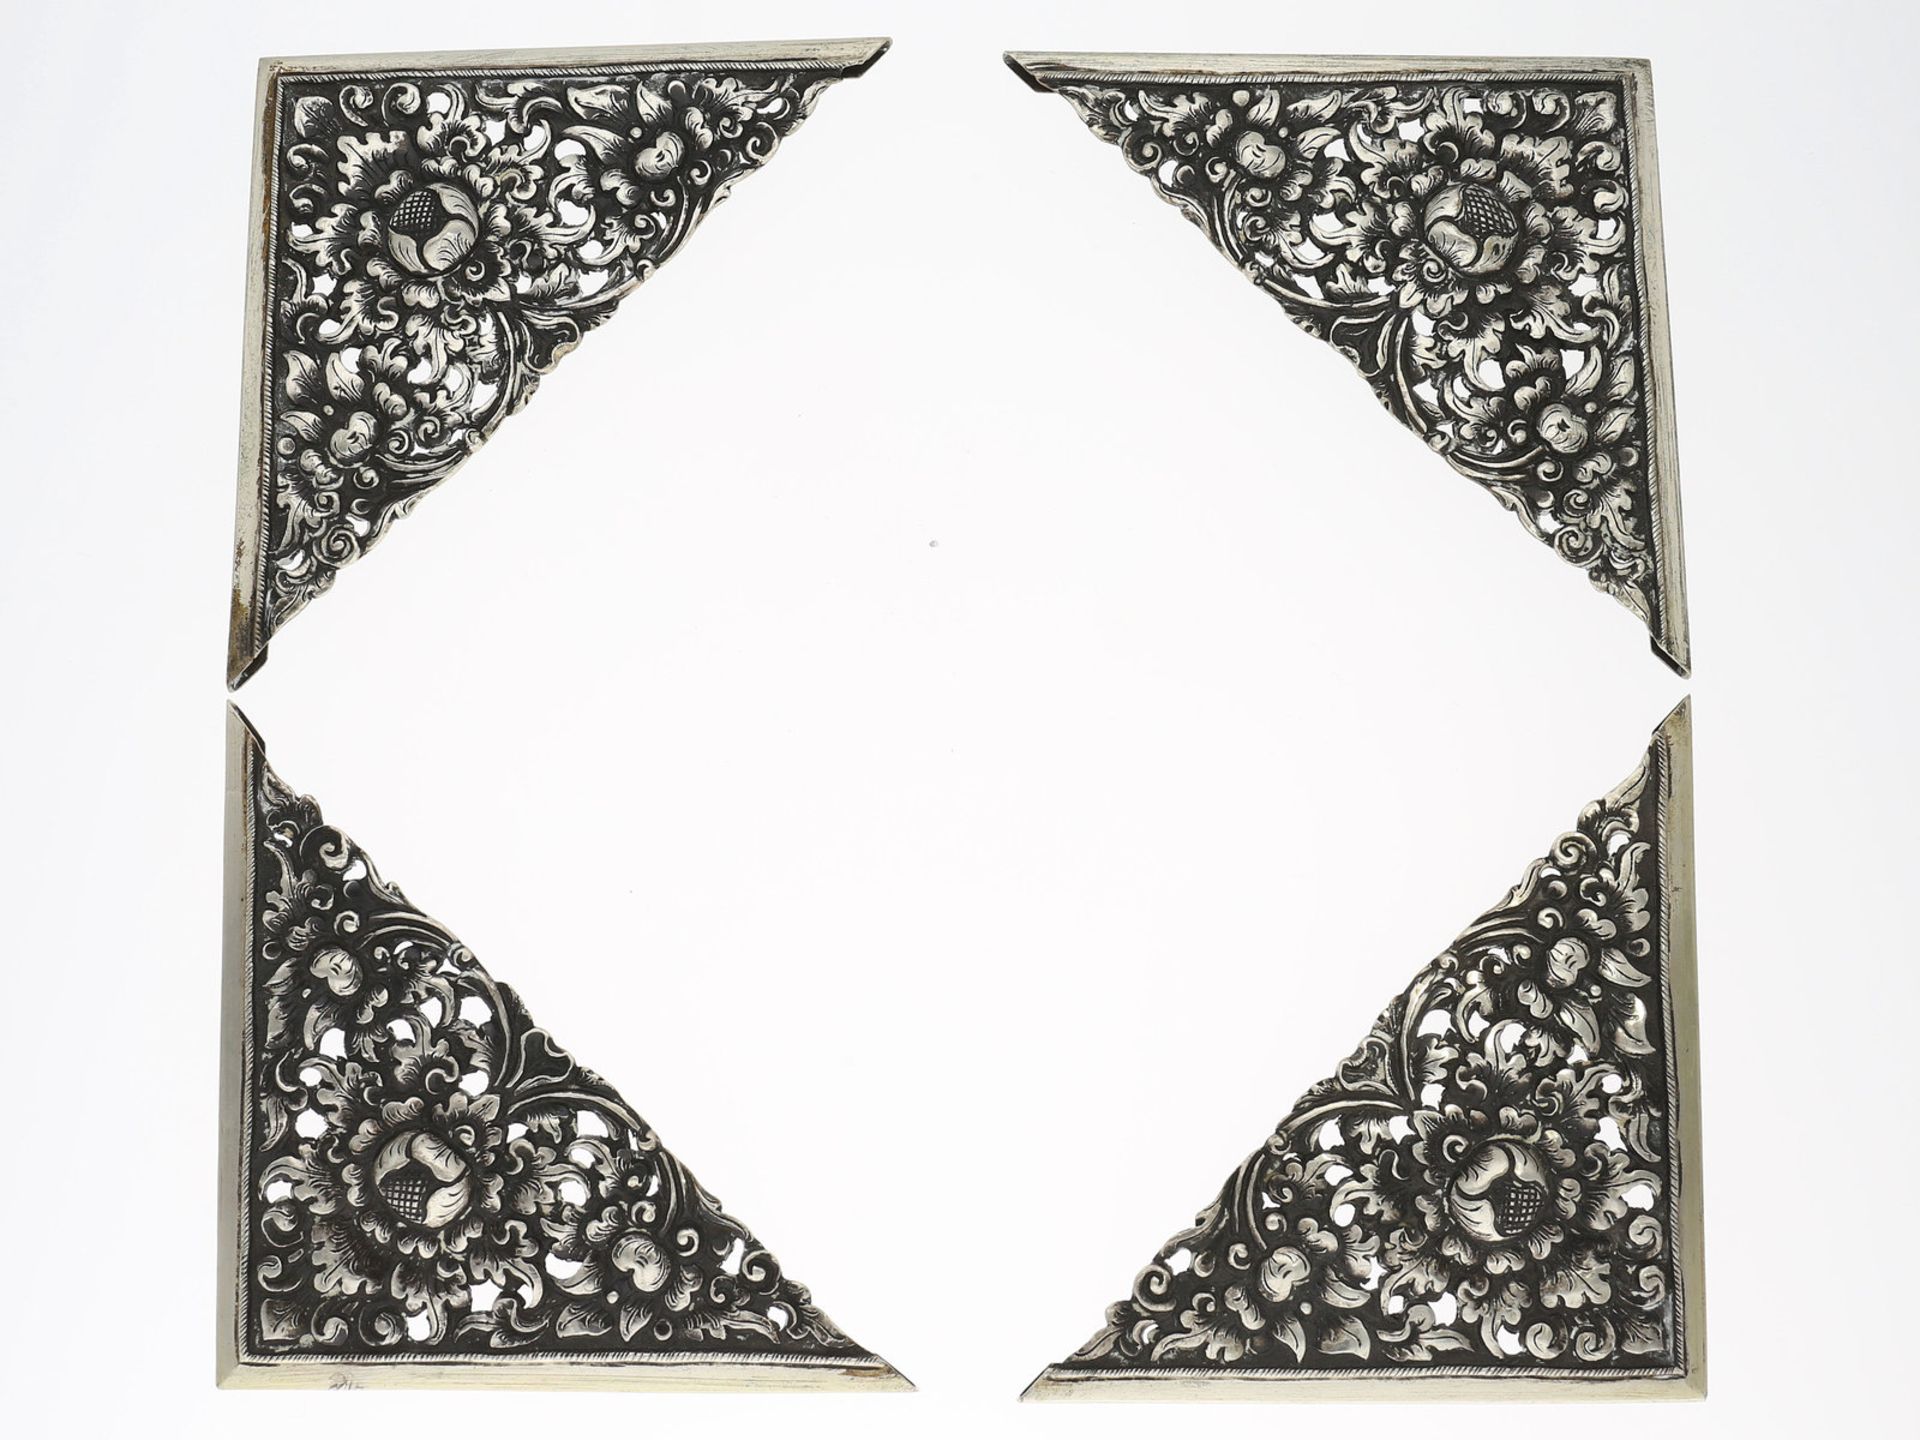 Bilderrahmen-Ecken/Buchecken: Set von 4 Reliefecken aus Silber, vintageJeweils ca. 10 × 10cm,